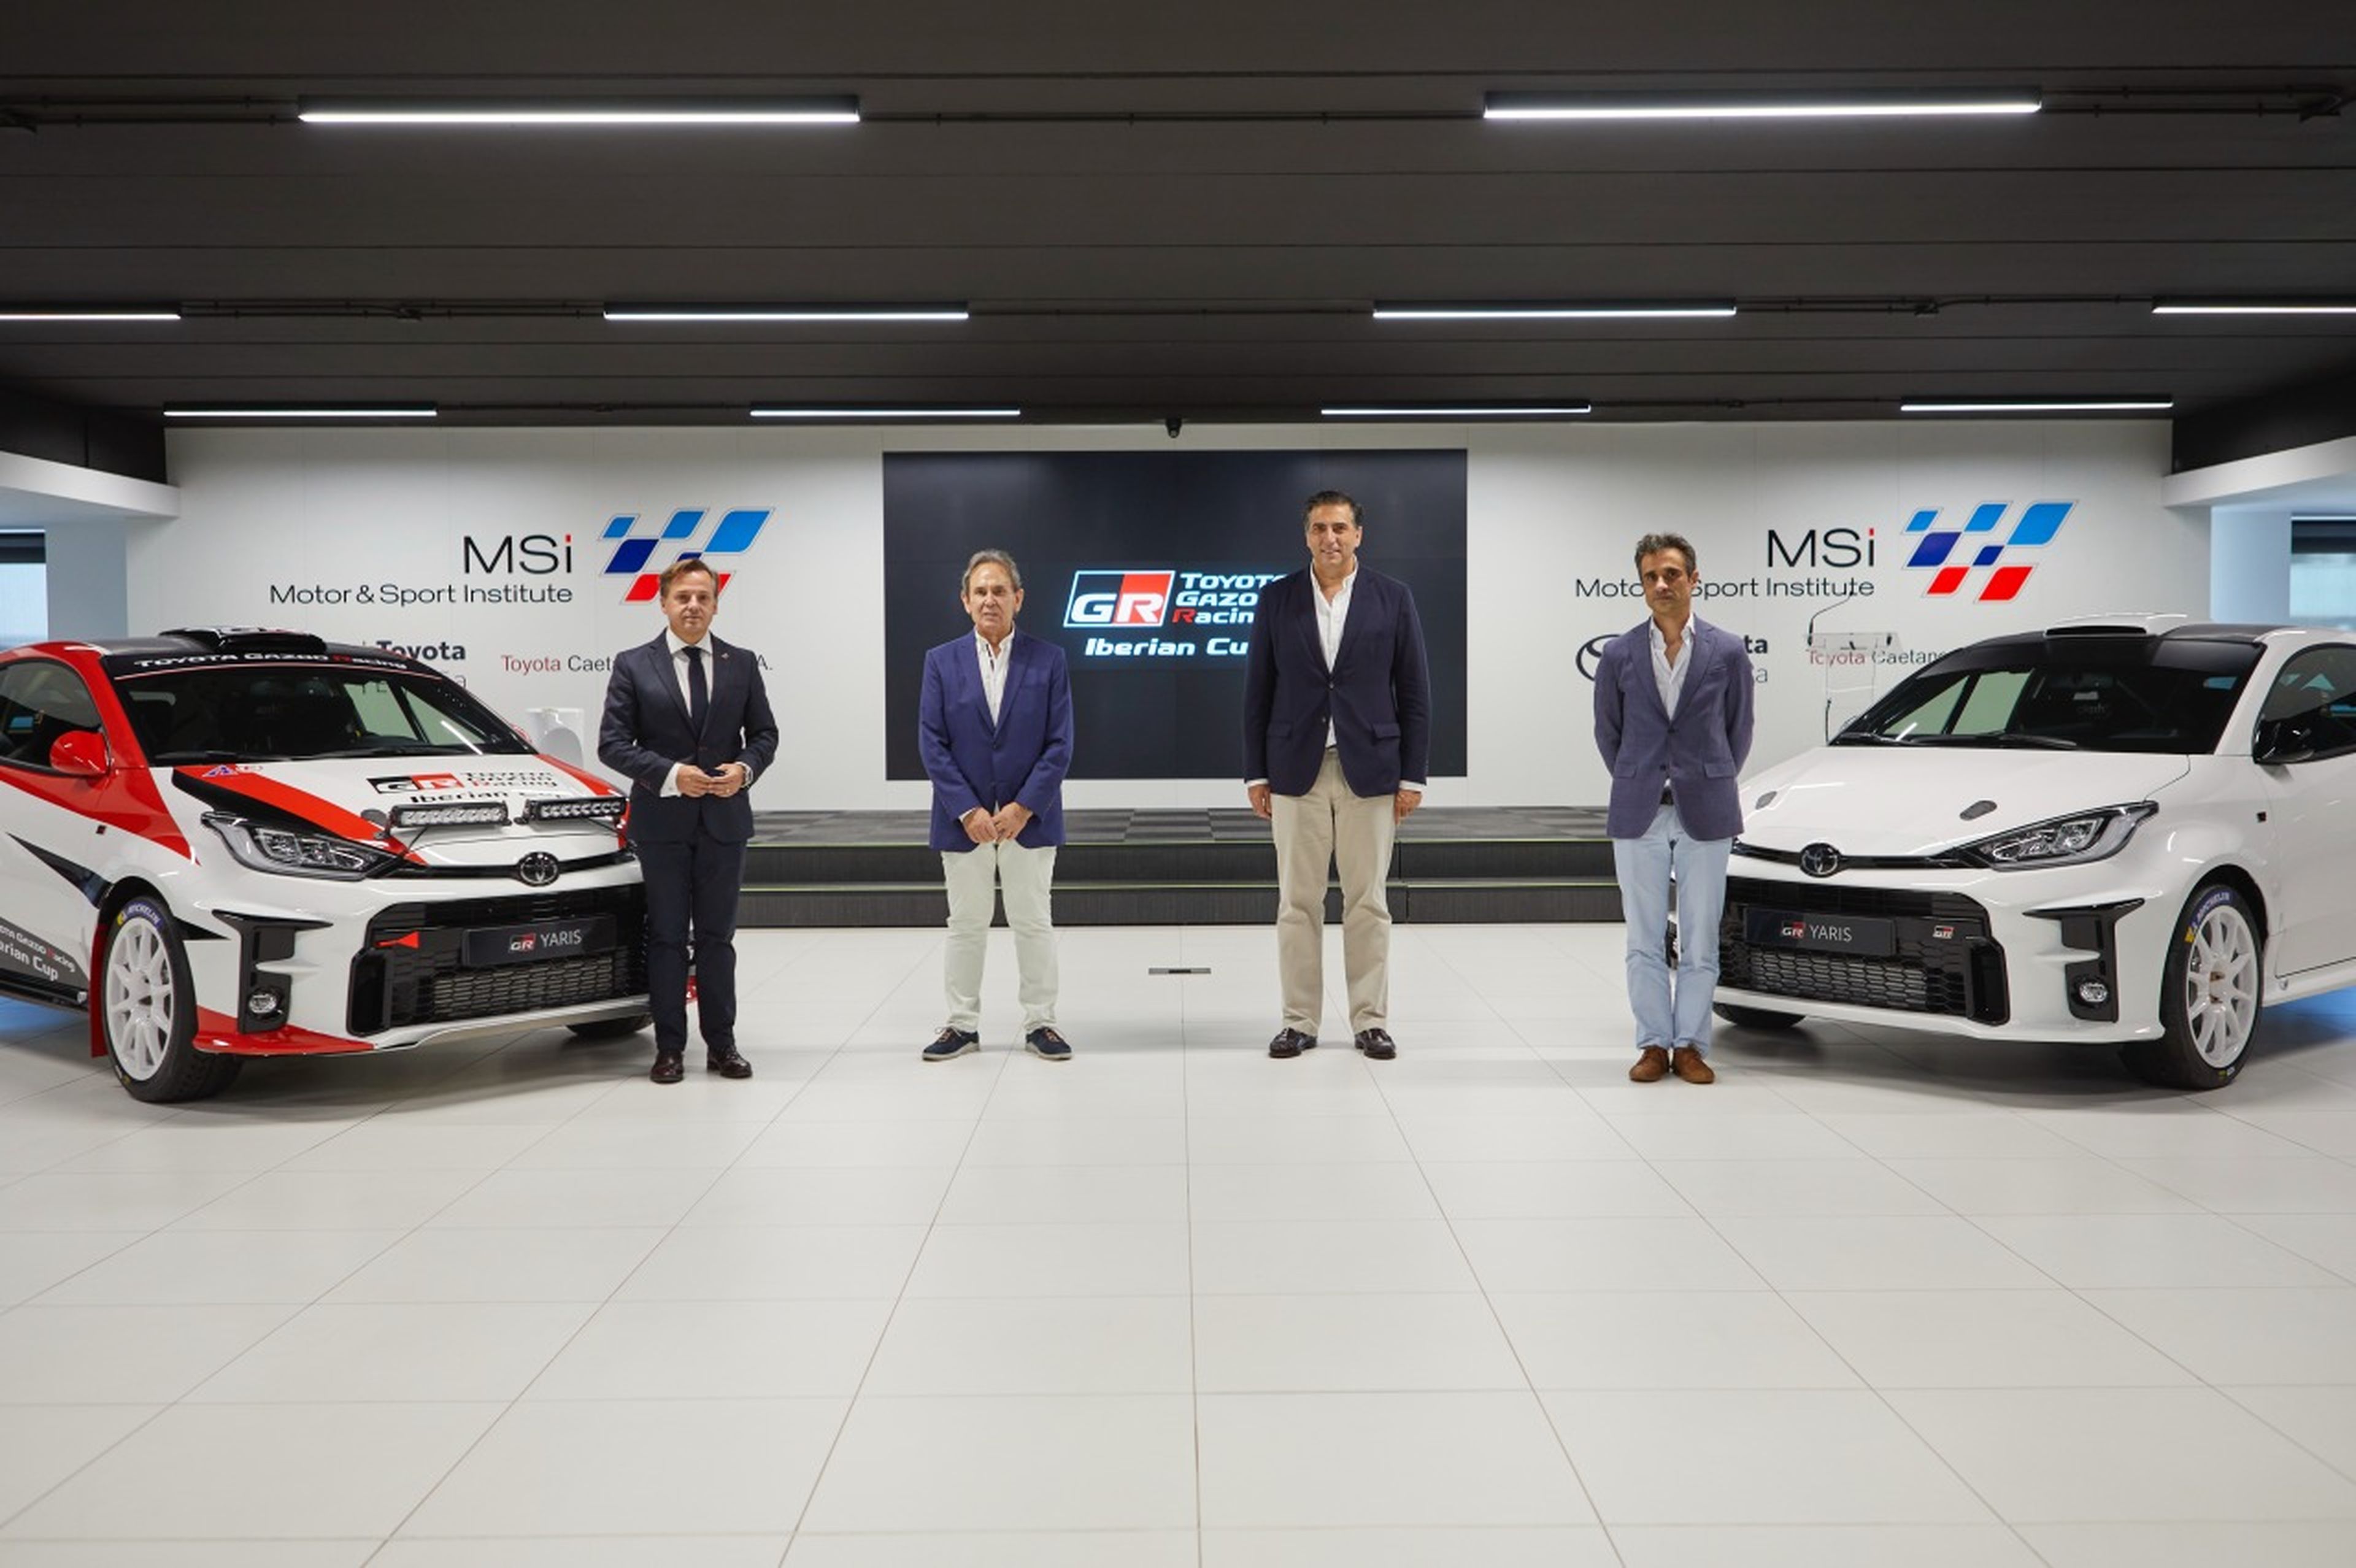 Presentación de la Toyota Gazoo Racing Iberian Cup en el MSi